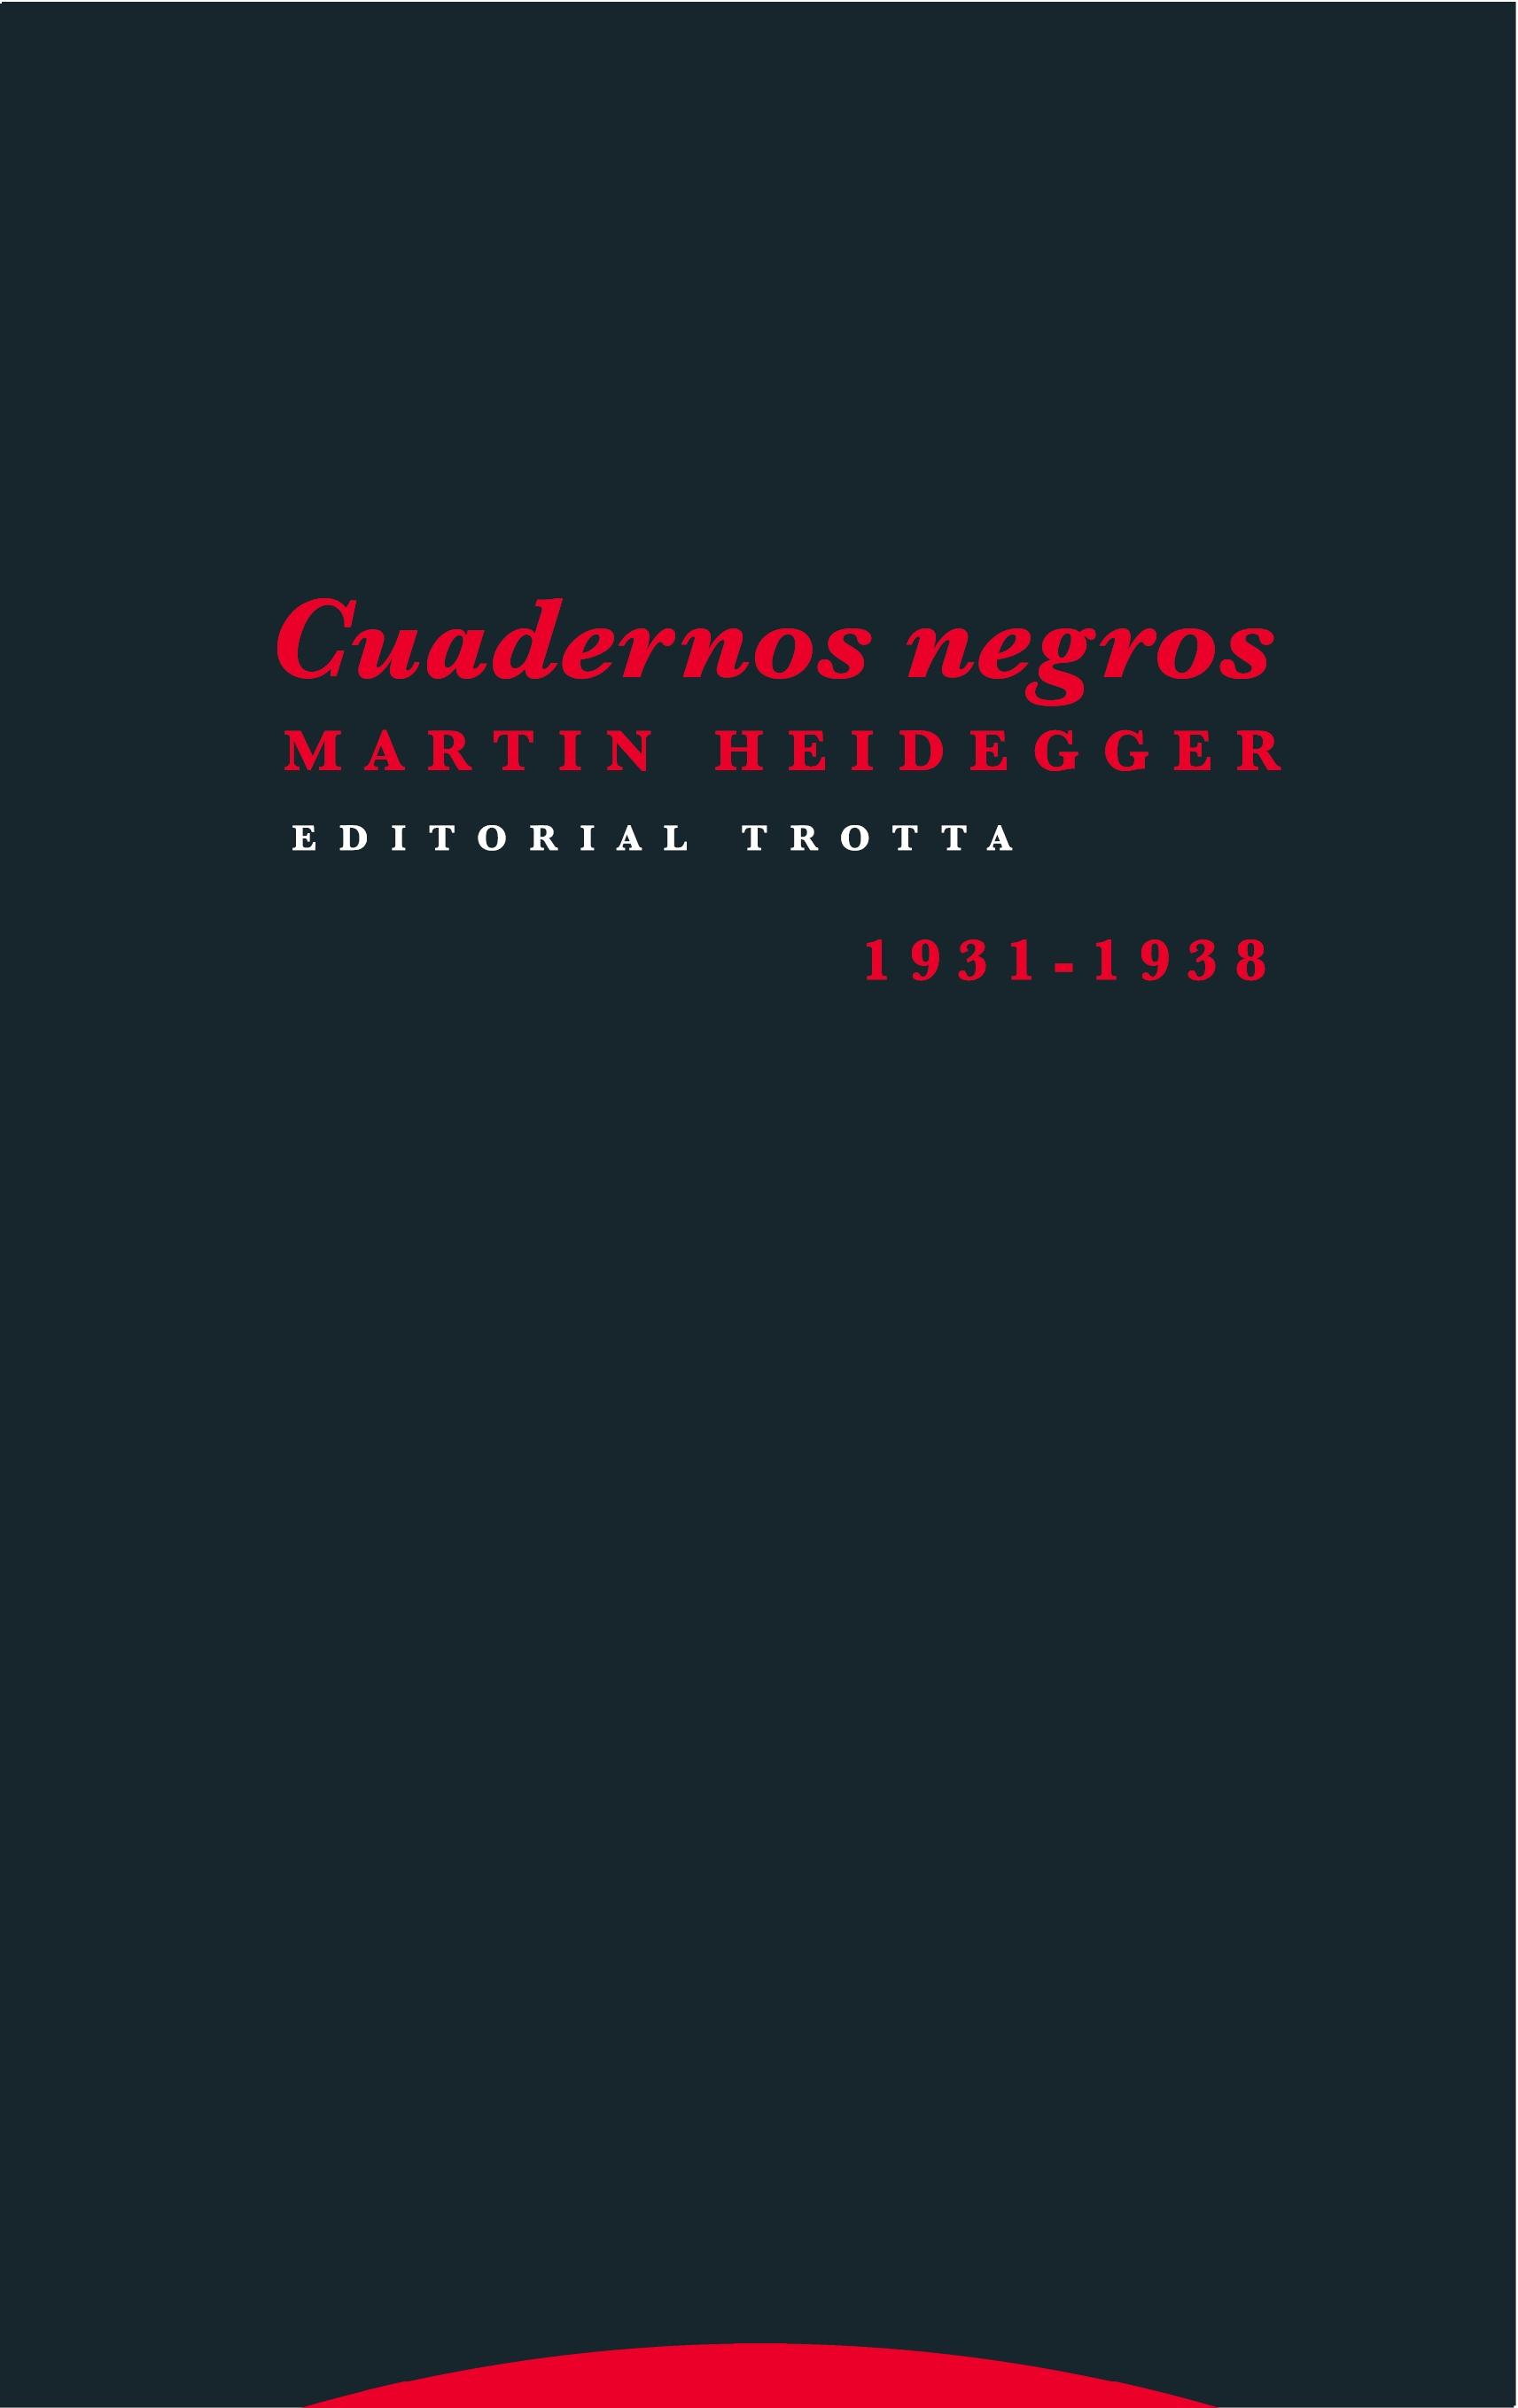 Cuadernos negros "1931-1938"